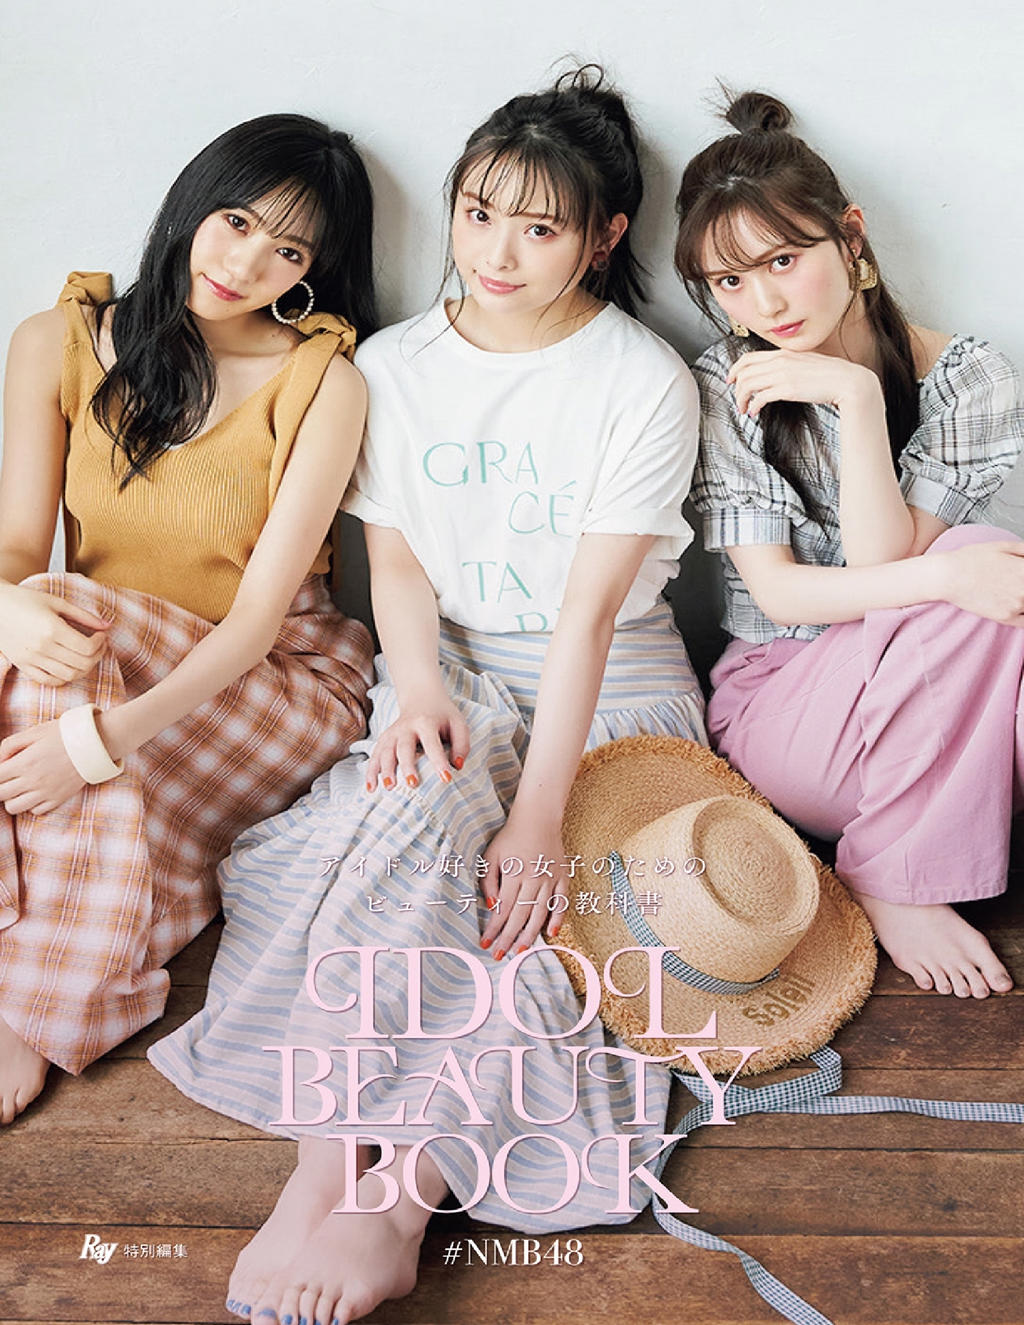 横野堇写真 Ray's IDOL BEAUTY BOOK (NMB48) - Yokono Sumire, Yamamoto Mikana, Umeyama Cocona